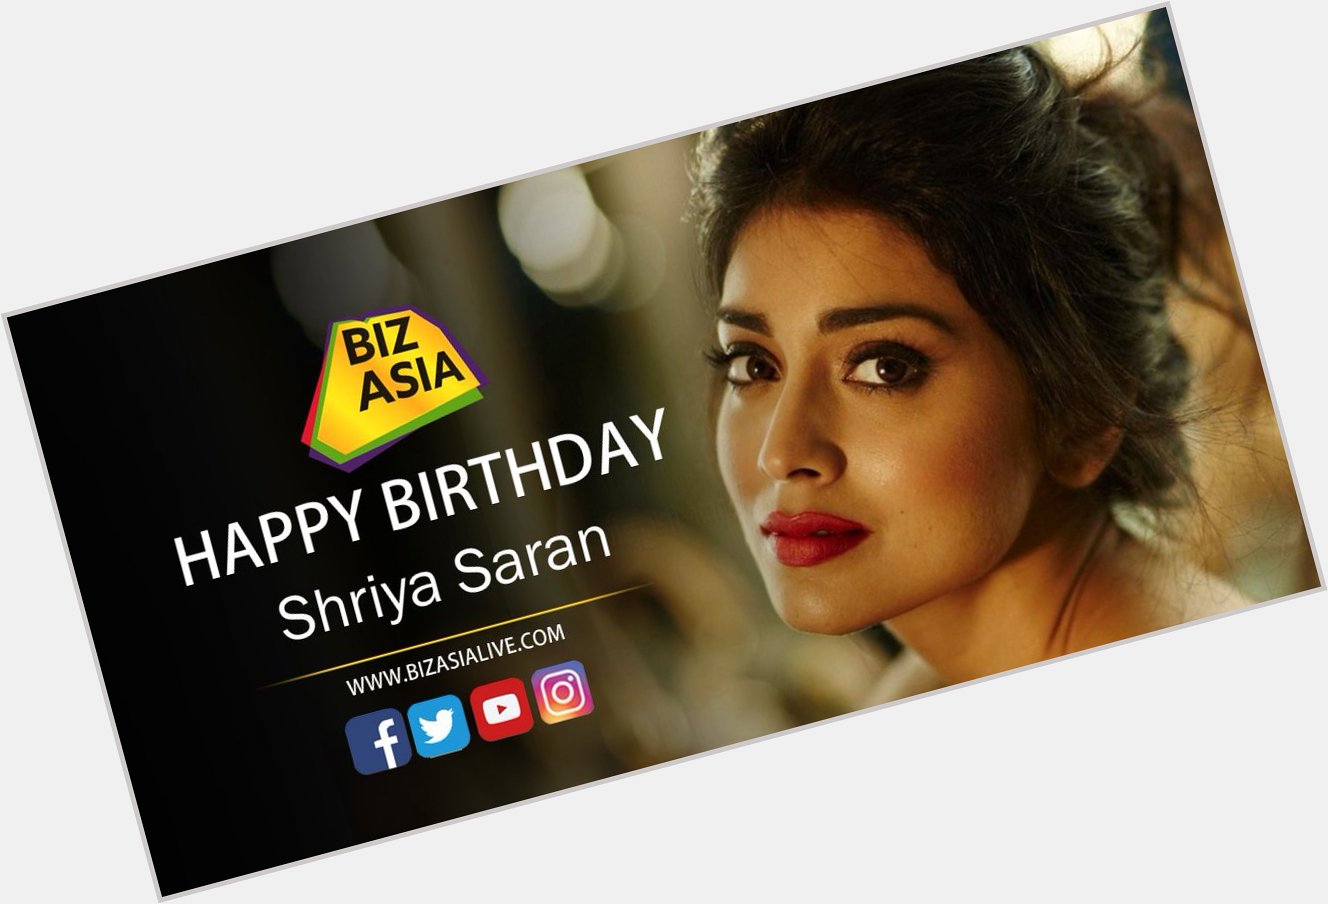  wishes Shriya Saran a very happy birthday.  